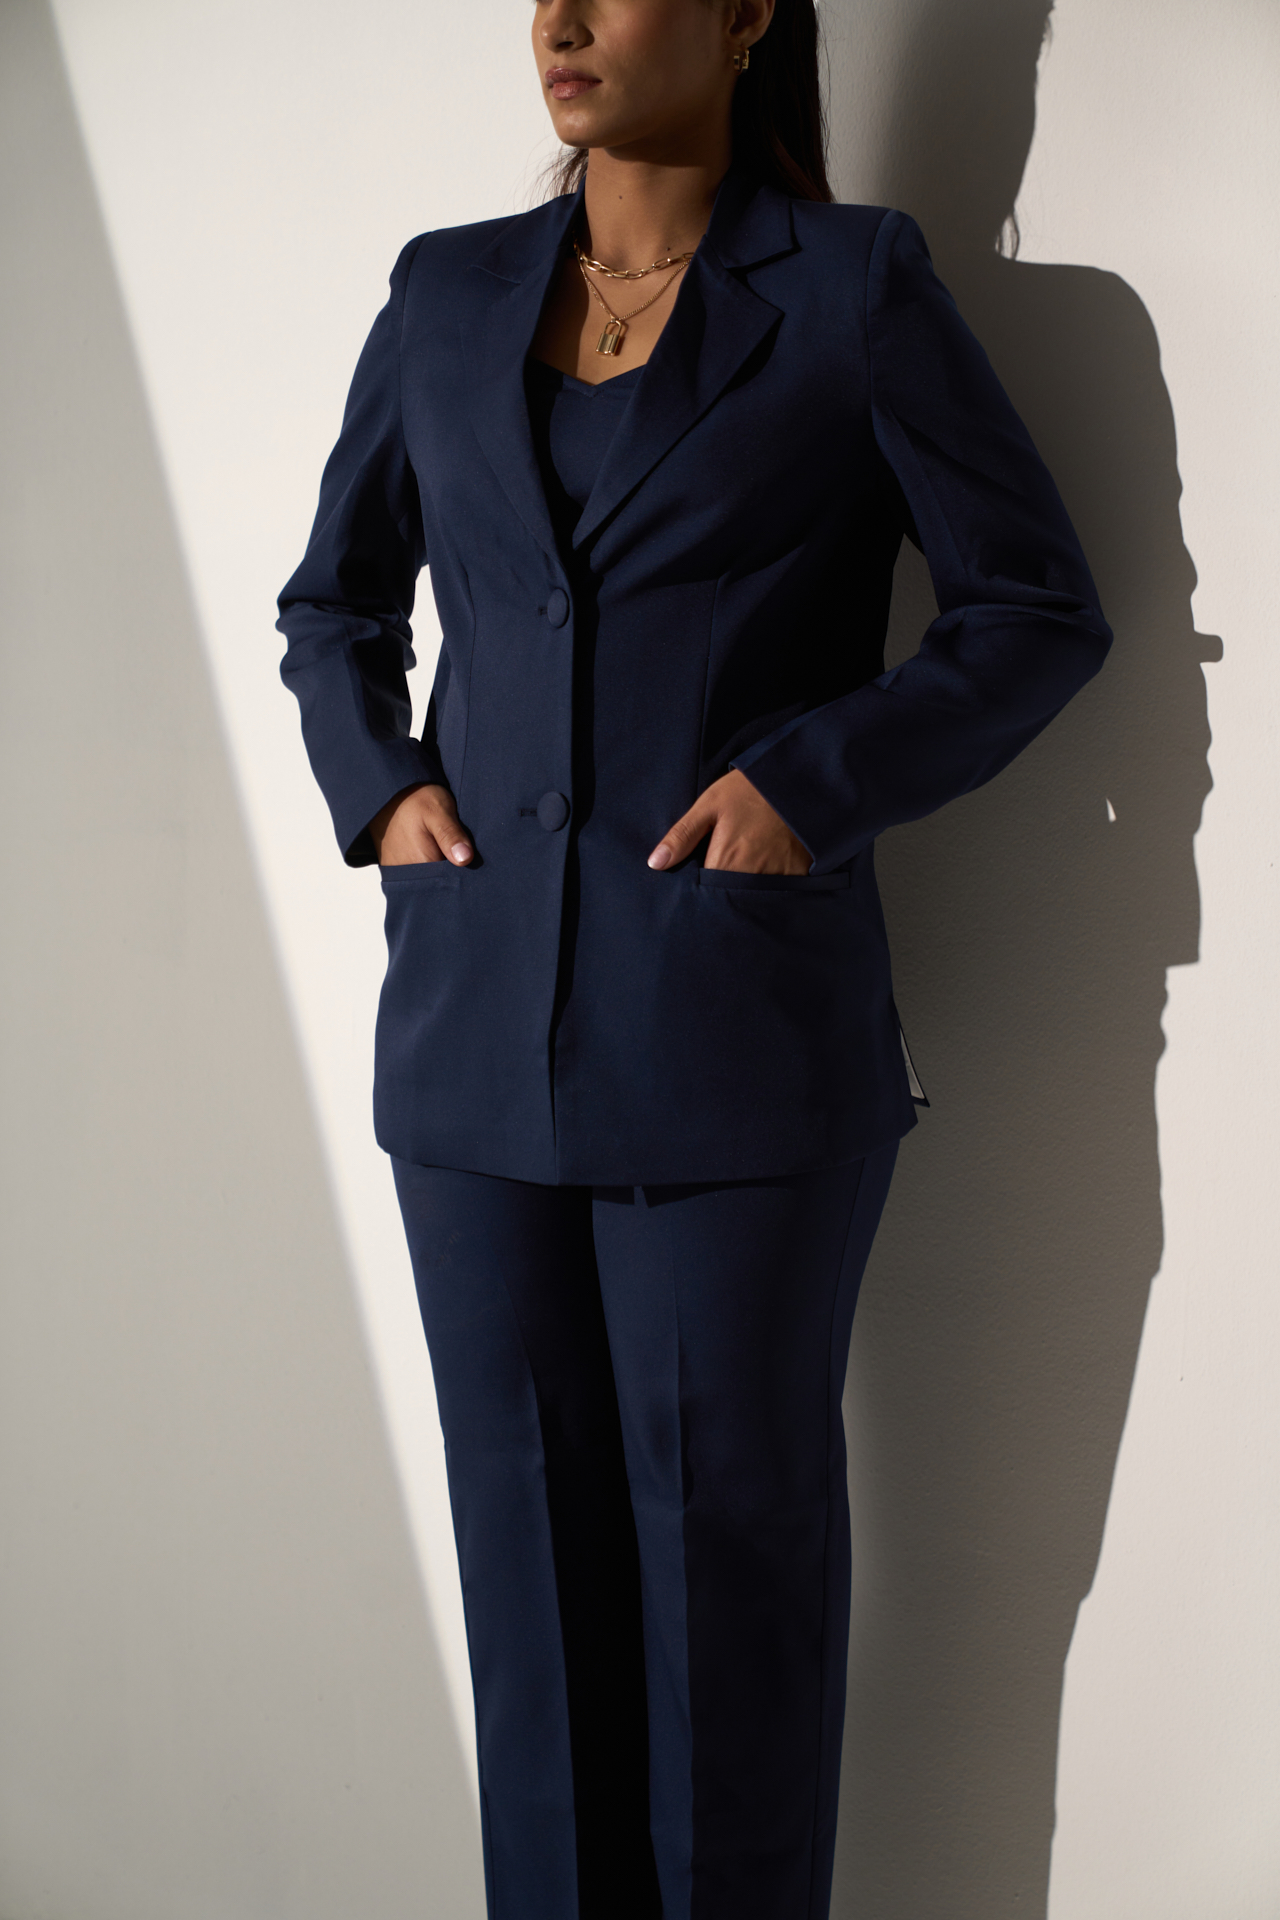 Women Suit Female Blazer Jacket - LatestBlazer.com